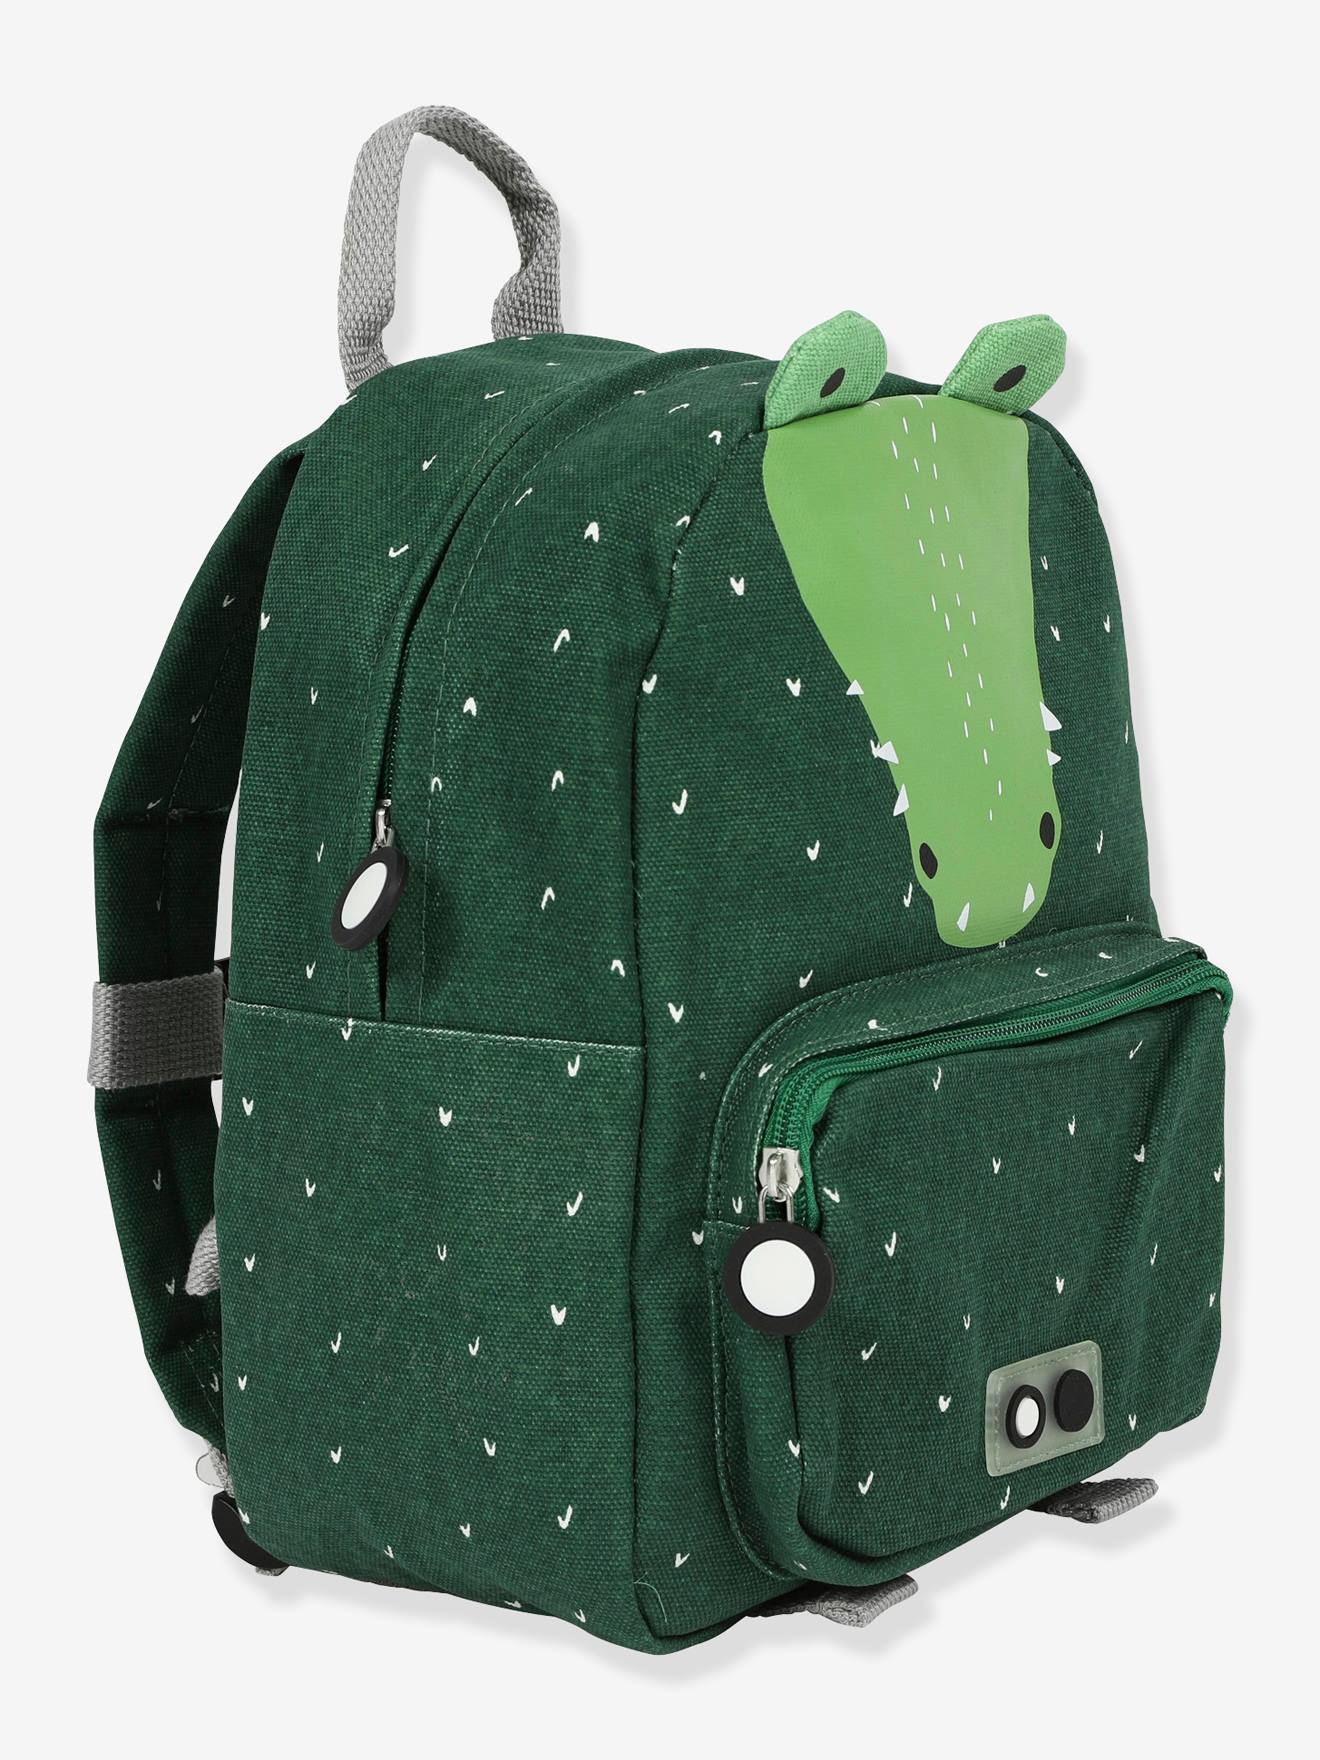 Mochila Backpack animal TRIXIE verde oscuro liso con motivos